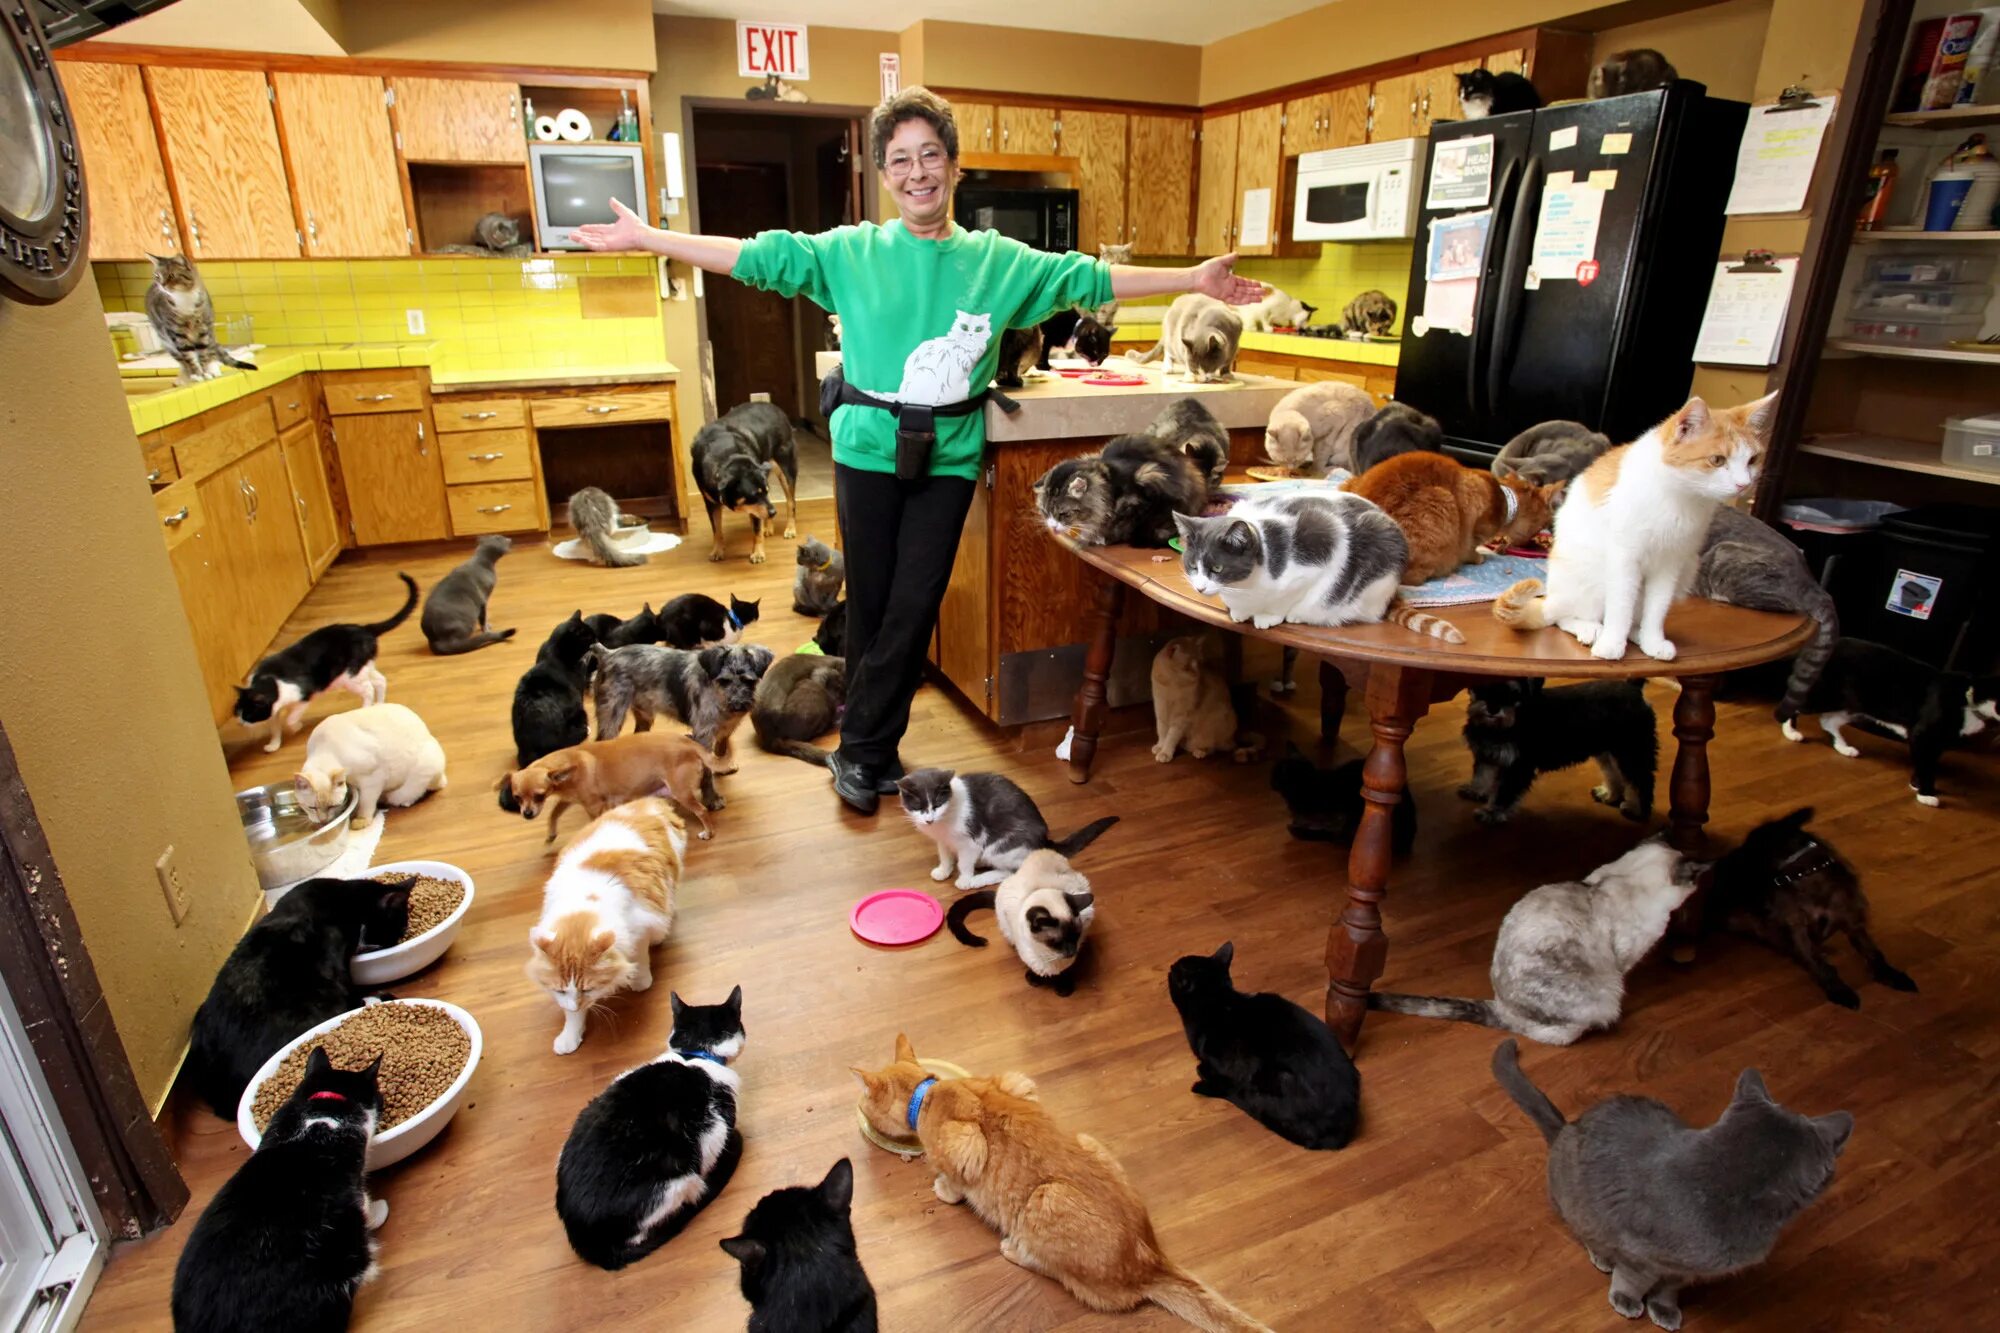 Все хотят жить в доме. Домашние животные в доме. Куча кошек в квартире. Домашиеживотные в квартире. Много животных в квартире.